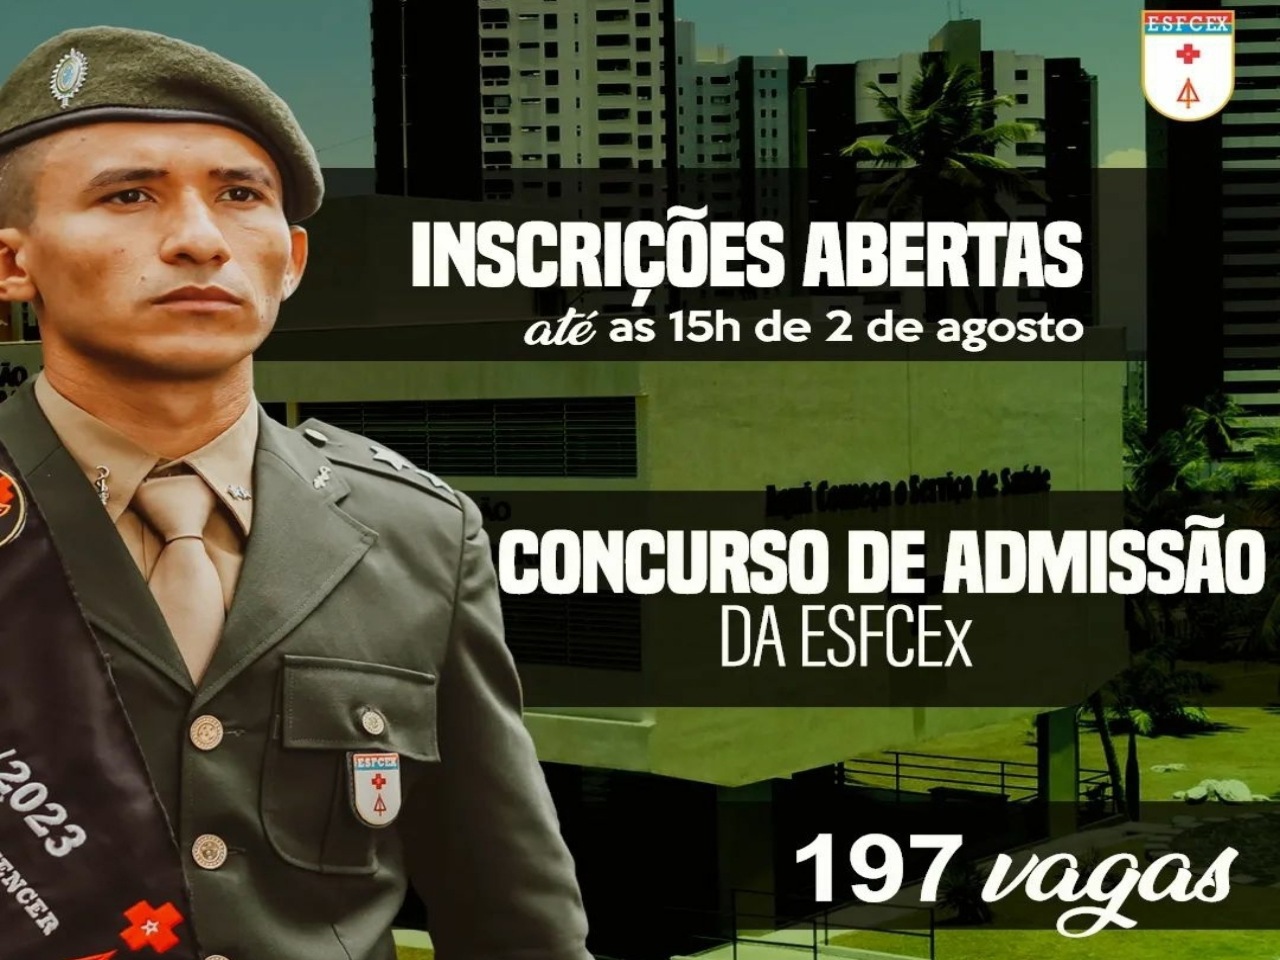 Exército Brasileiro - Últimos dias para se inscrever no #concurso de  admissão aos cursos de formação e graduação de sargentos do Exército. NÃO  PERCA MAIS TEMPO! Inscreva-se: bit.ly/ConcursoESA-2020 #VemSerSargento